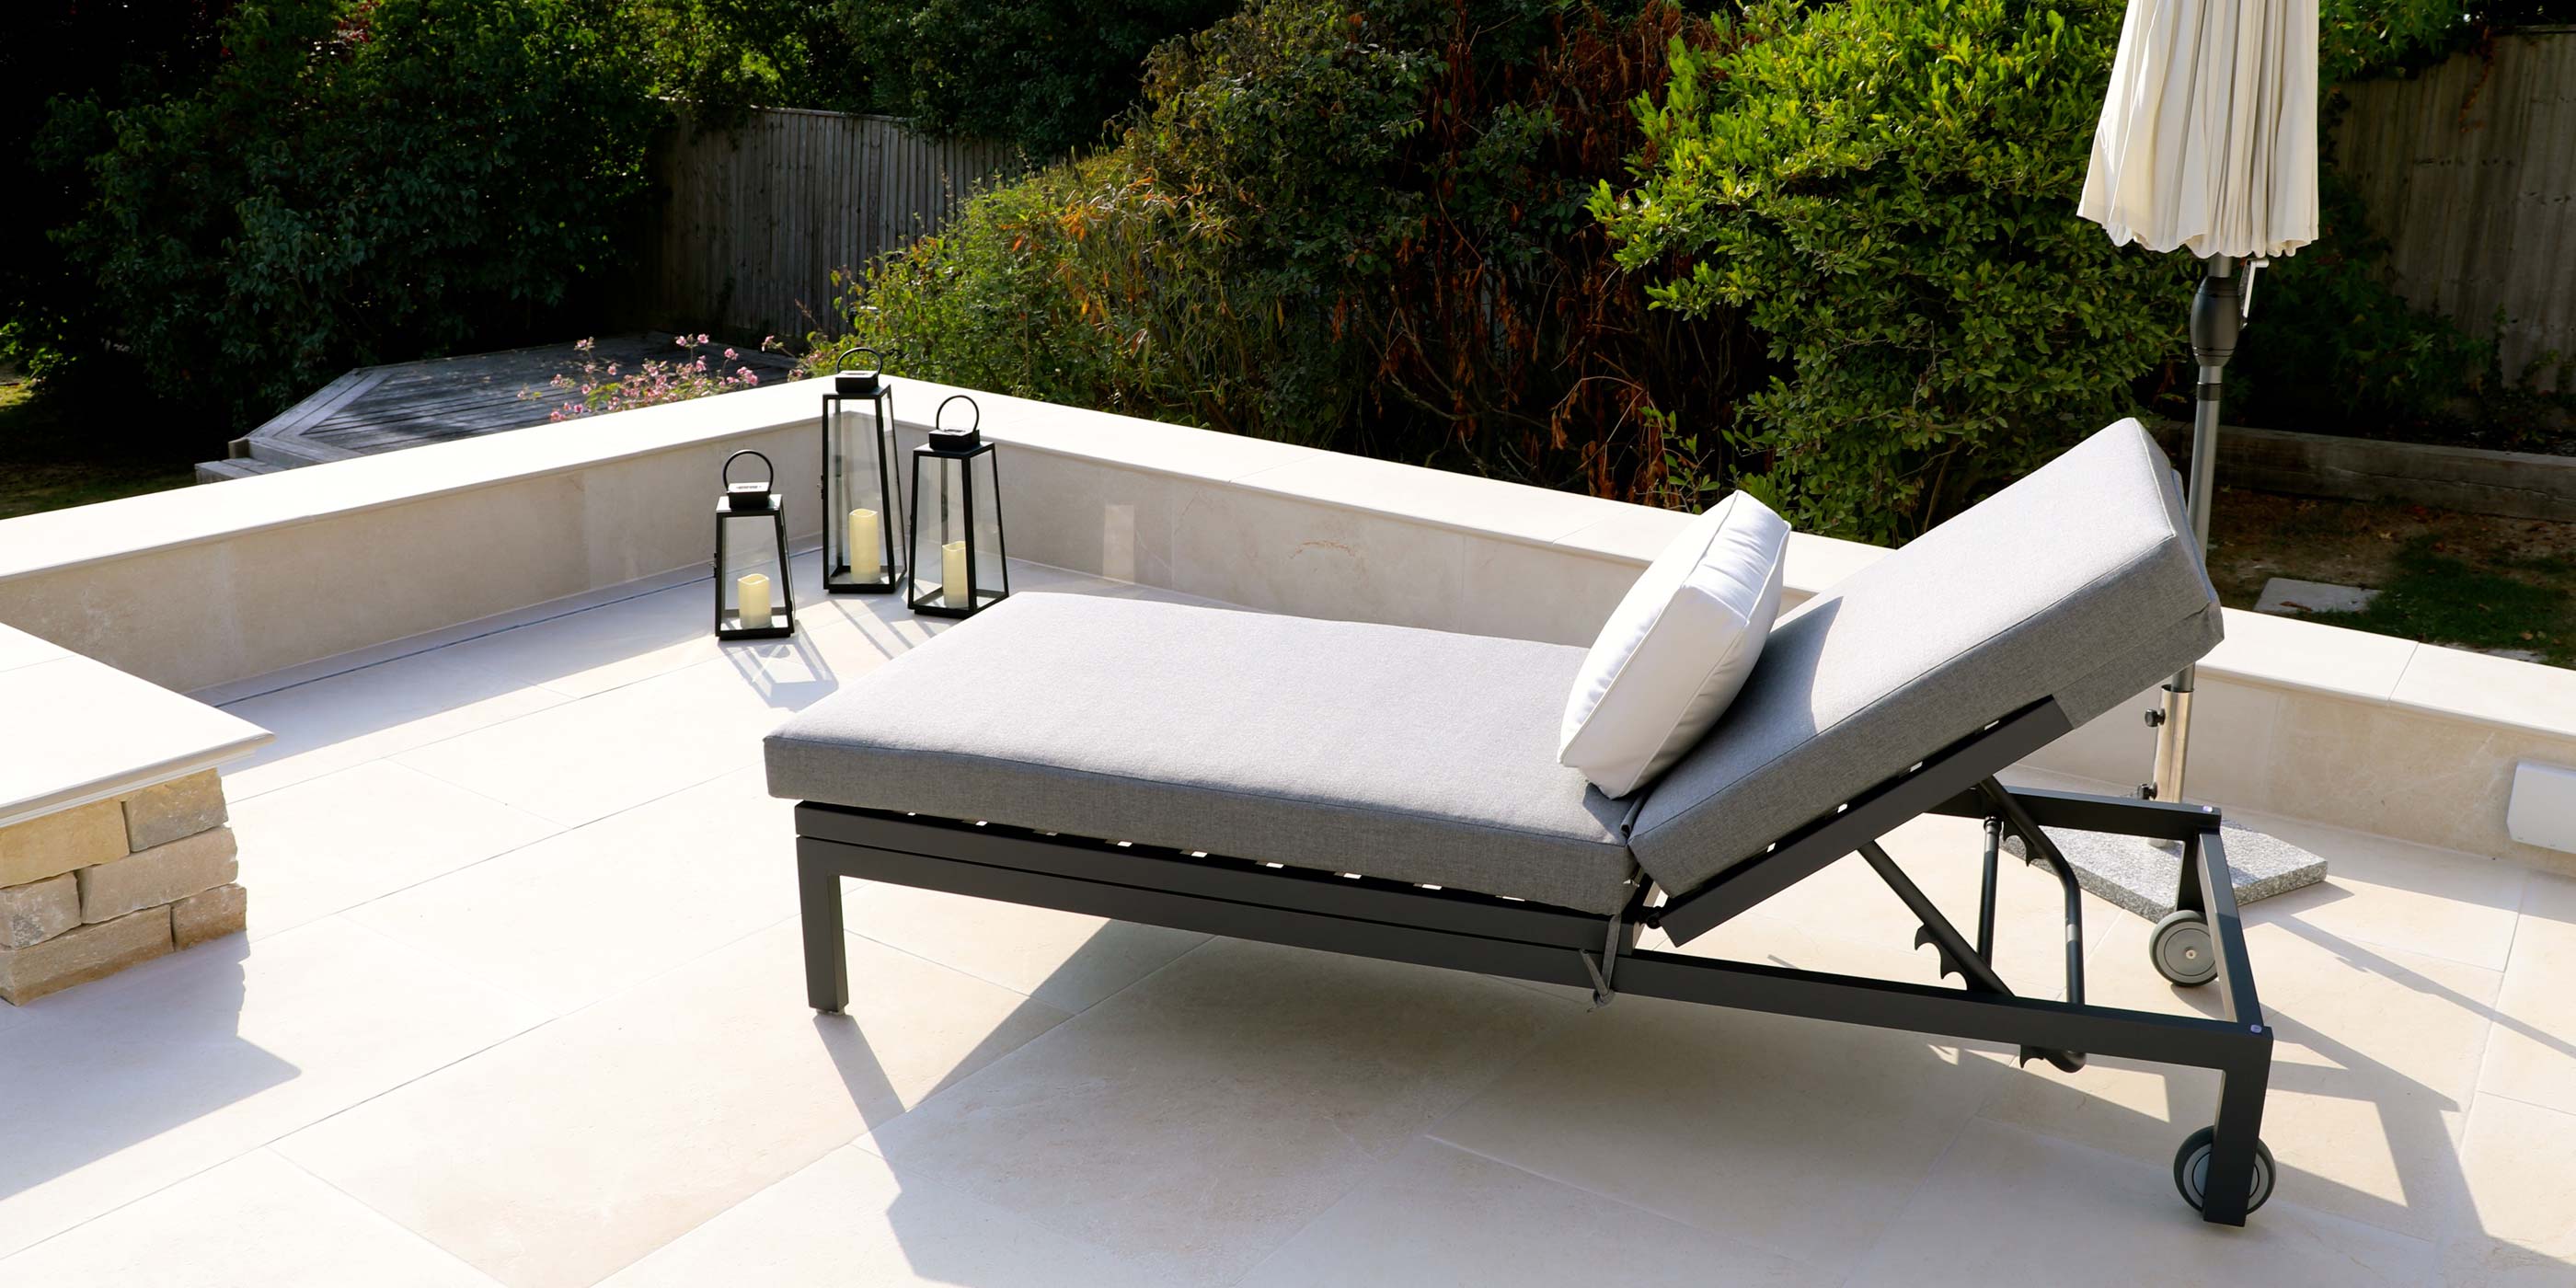 Moderno Sunbrella Fabric Sun Lounger On Balcony | Alexander Francis